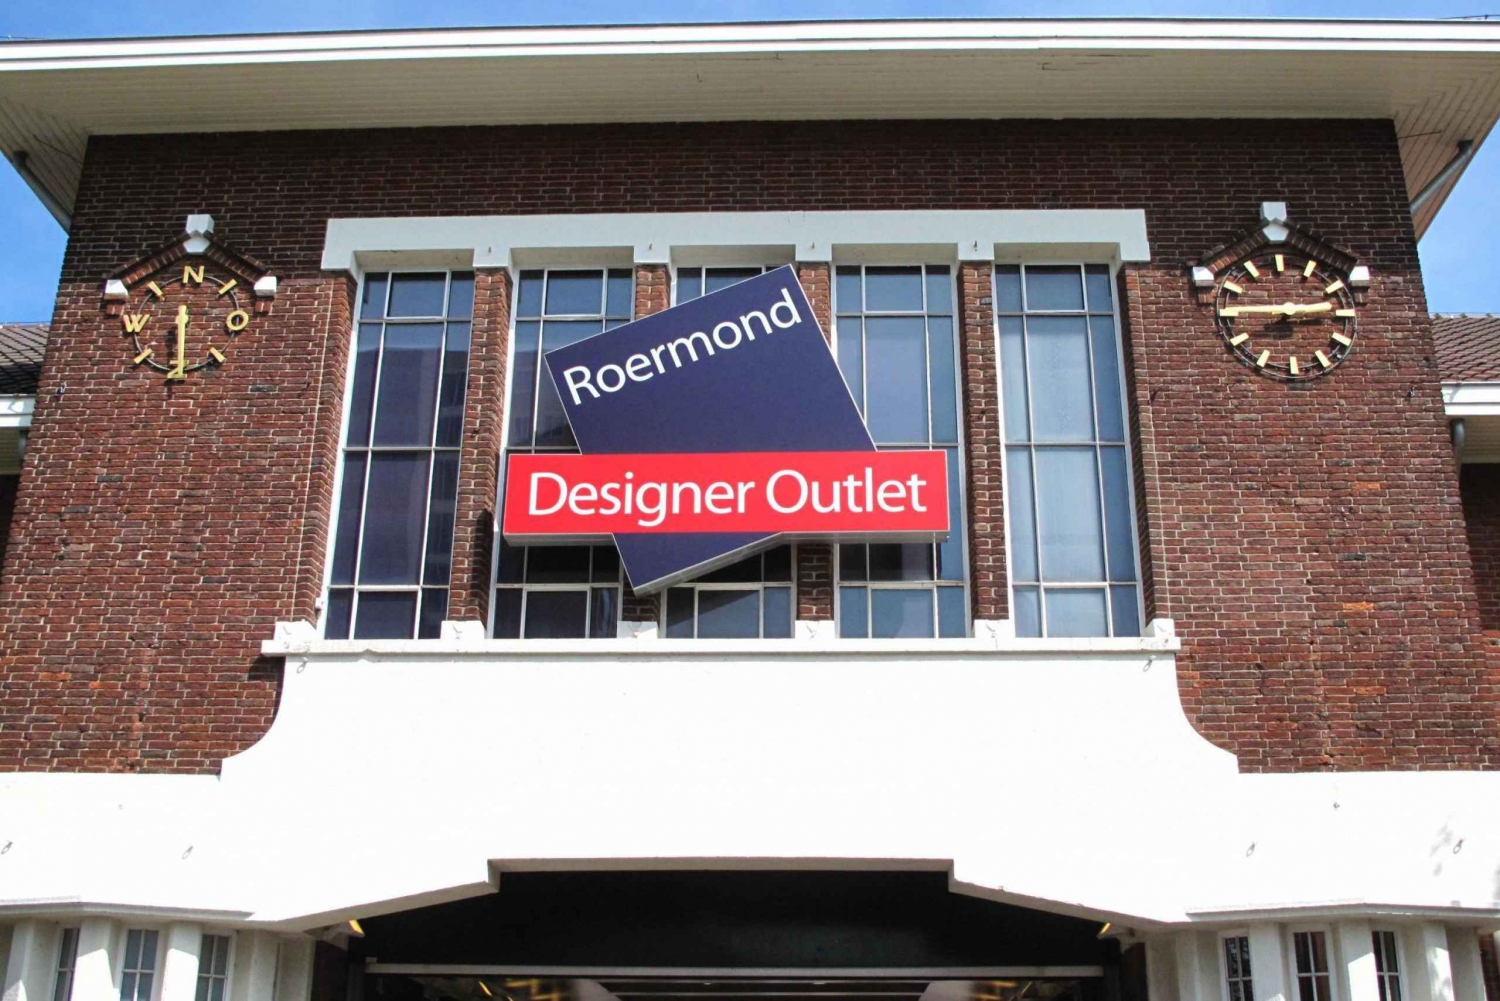 Amsterdã: Passeio privativo de um dia ao Designer Outlet Roermond